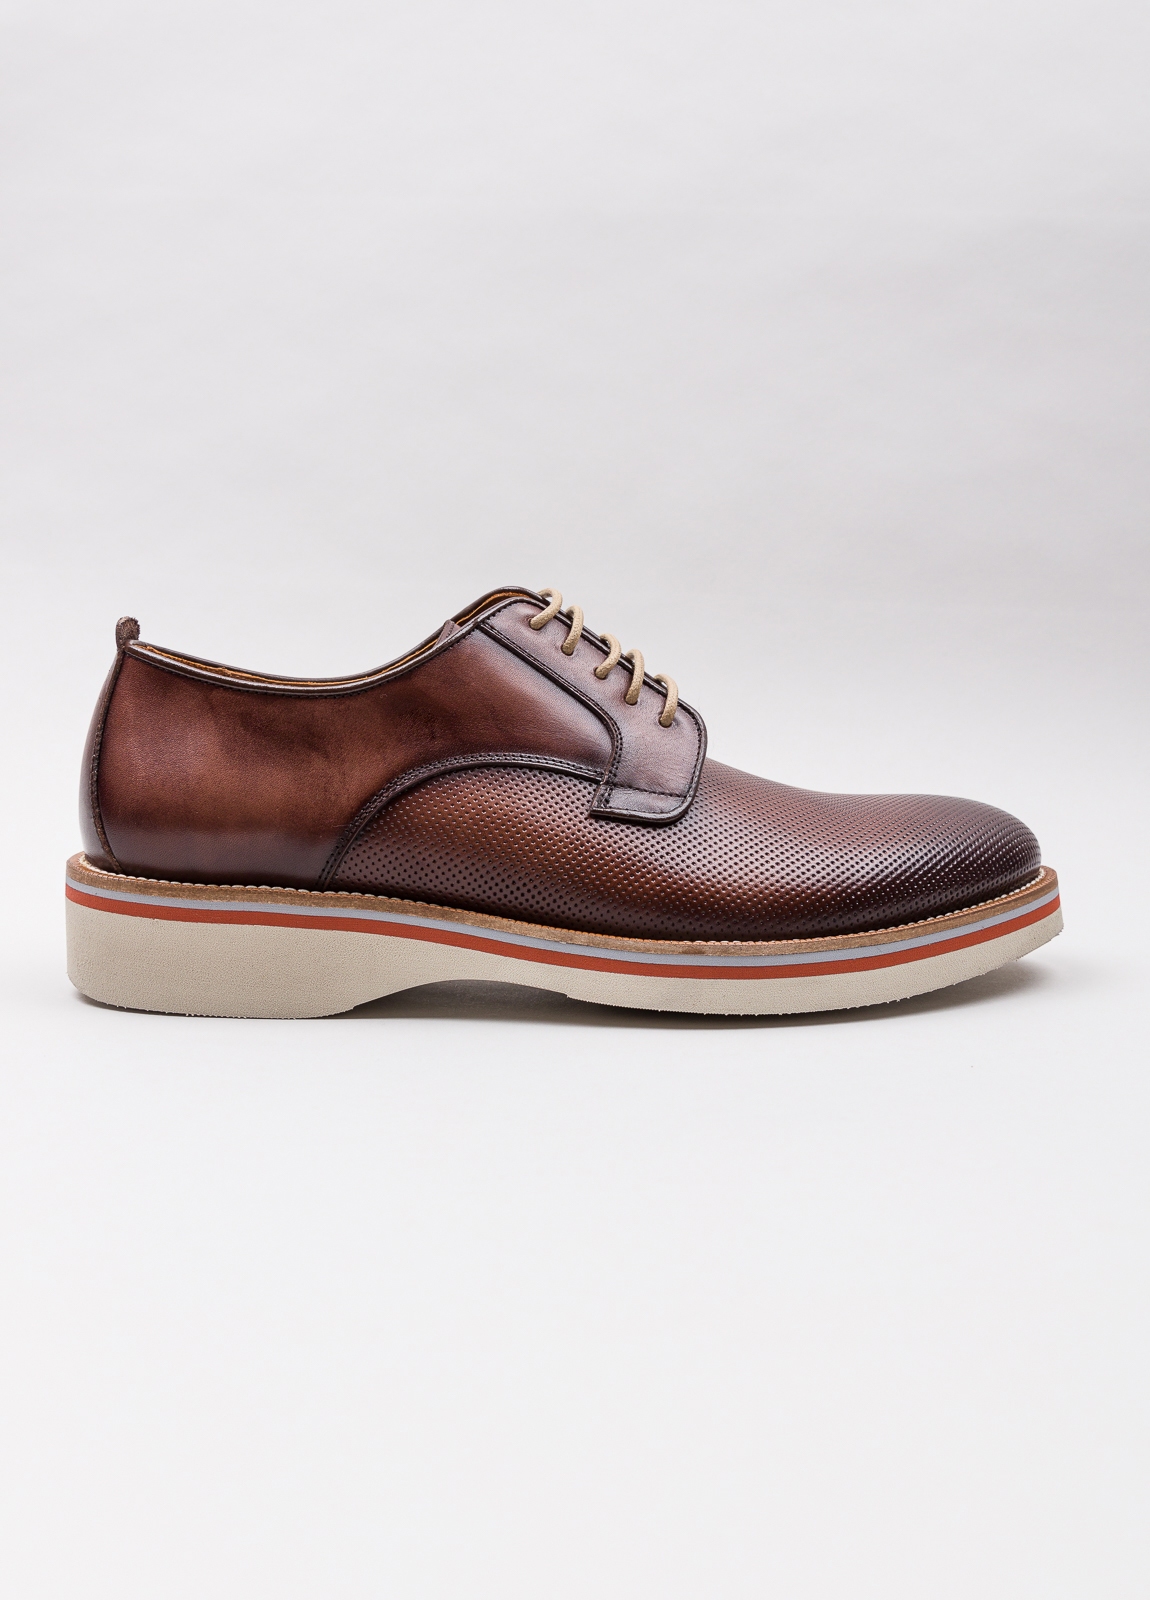 Zapato sport wear furest colección troquelado marrón - Ítem5